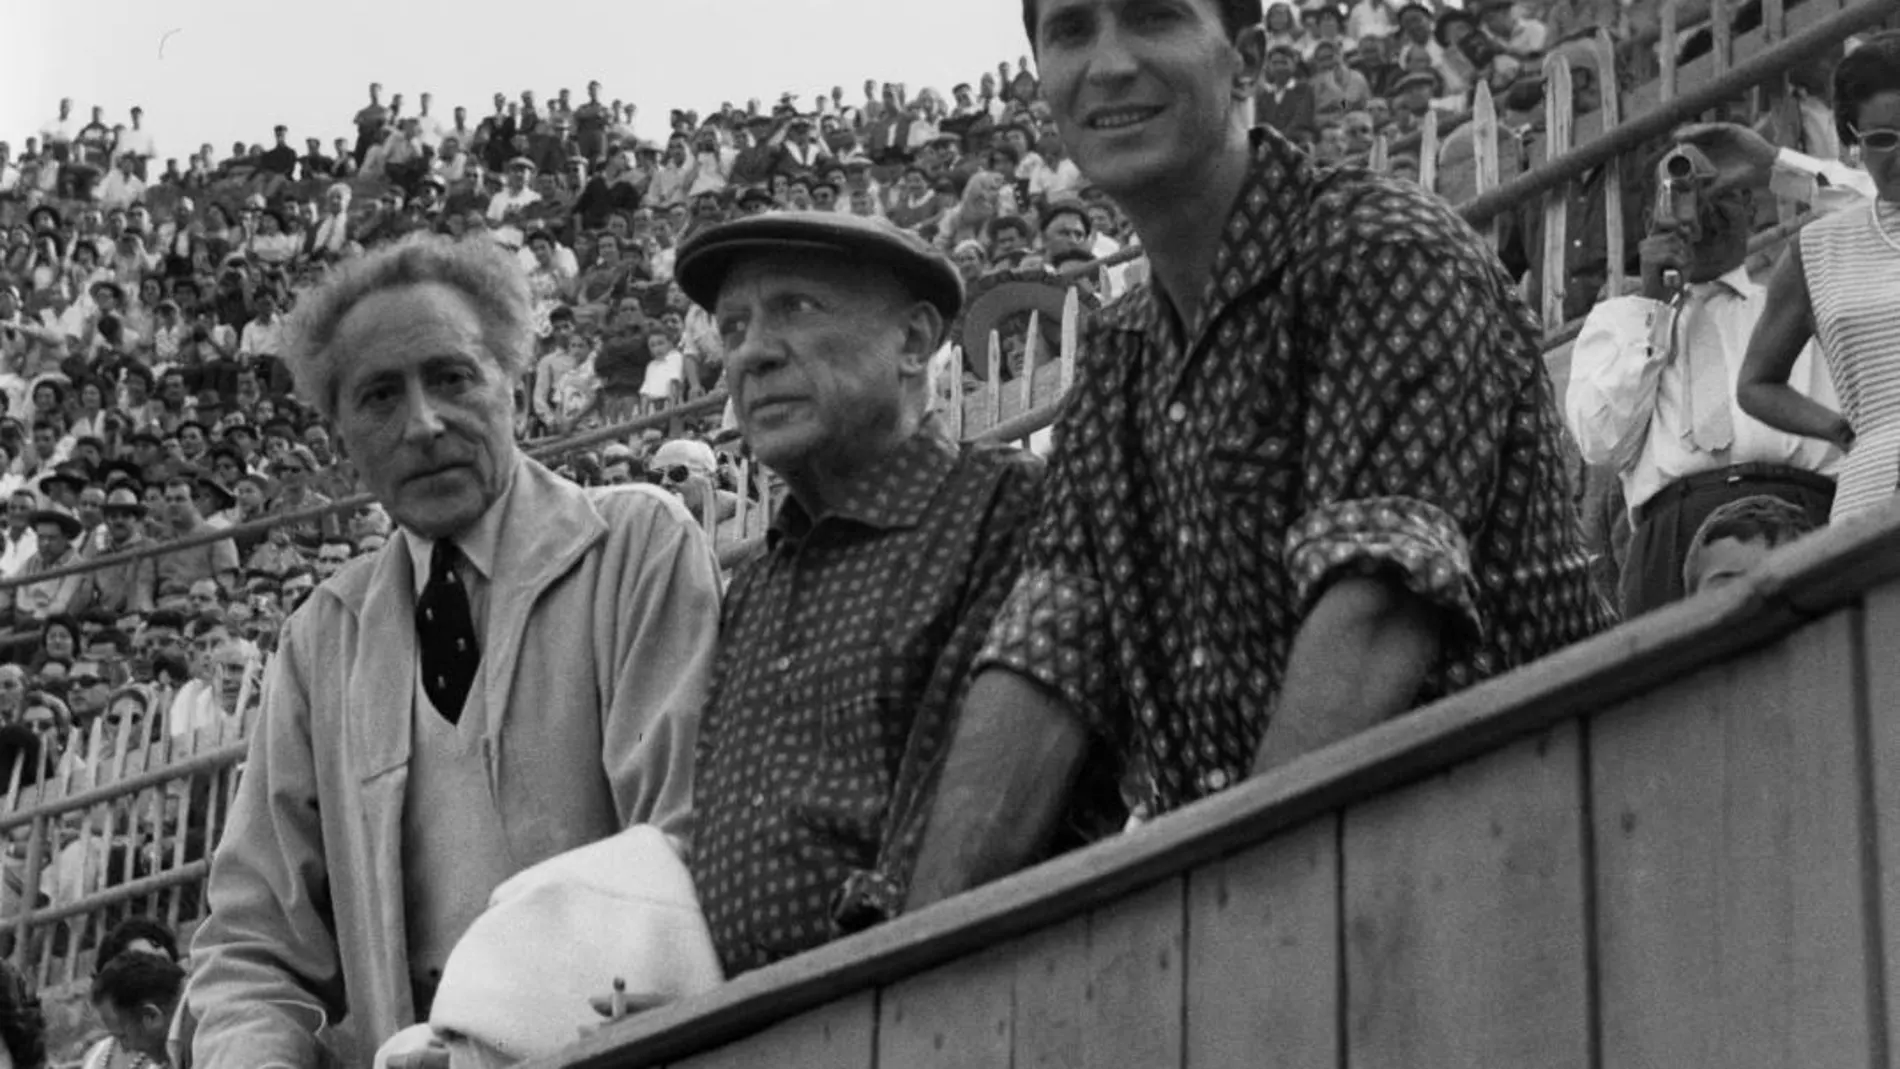 Pablo Picasso acompañado de Jean Cocteau y Luis Miguel Dominguín en una corrida de toros en Francia